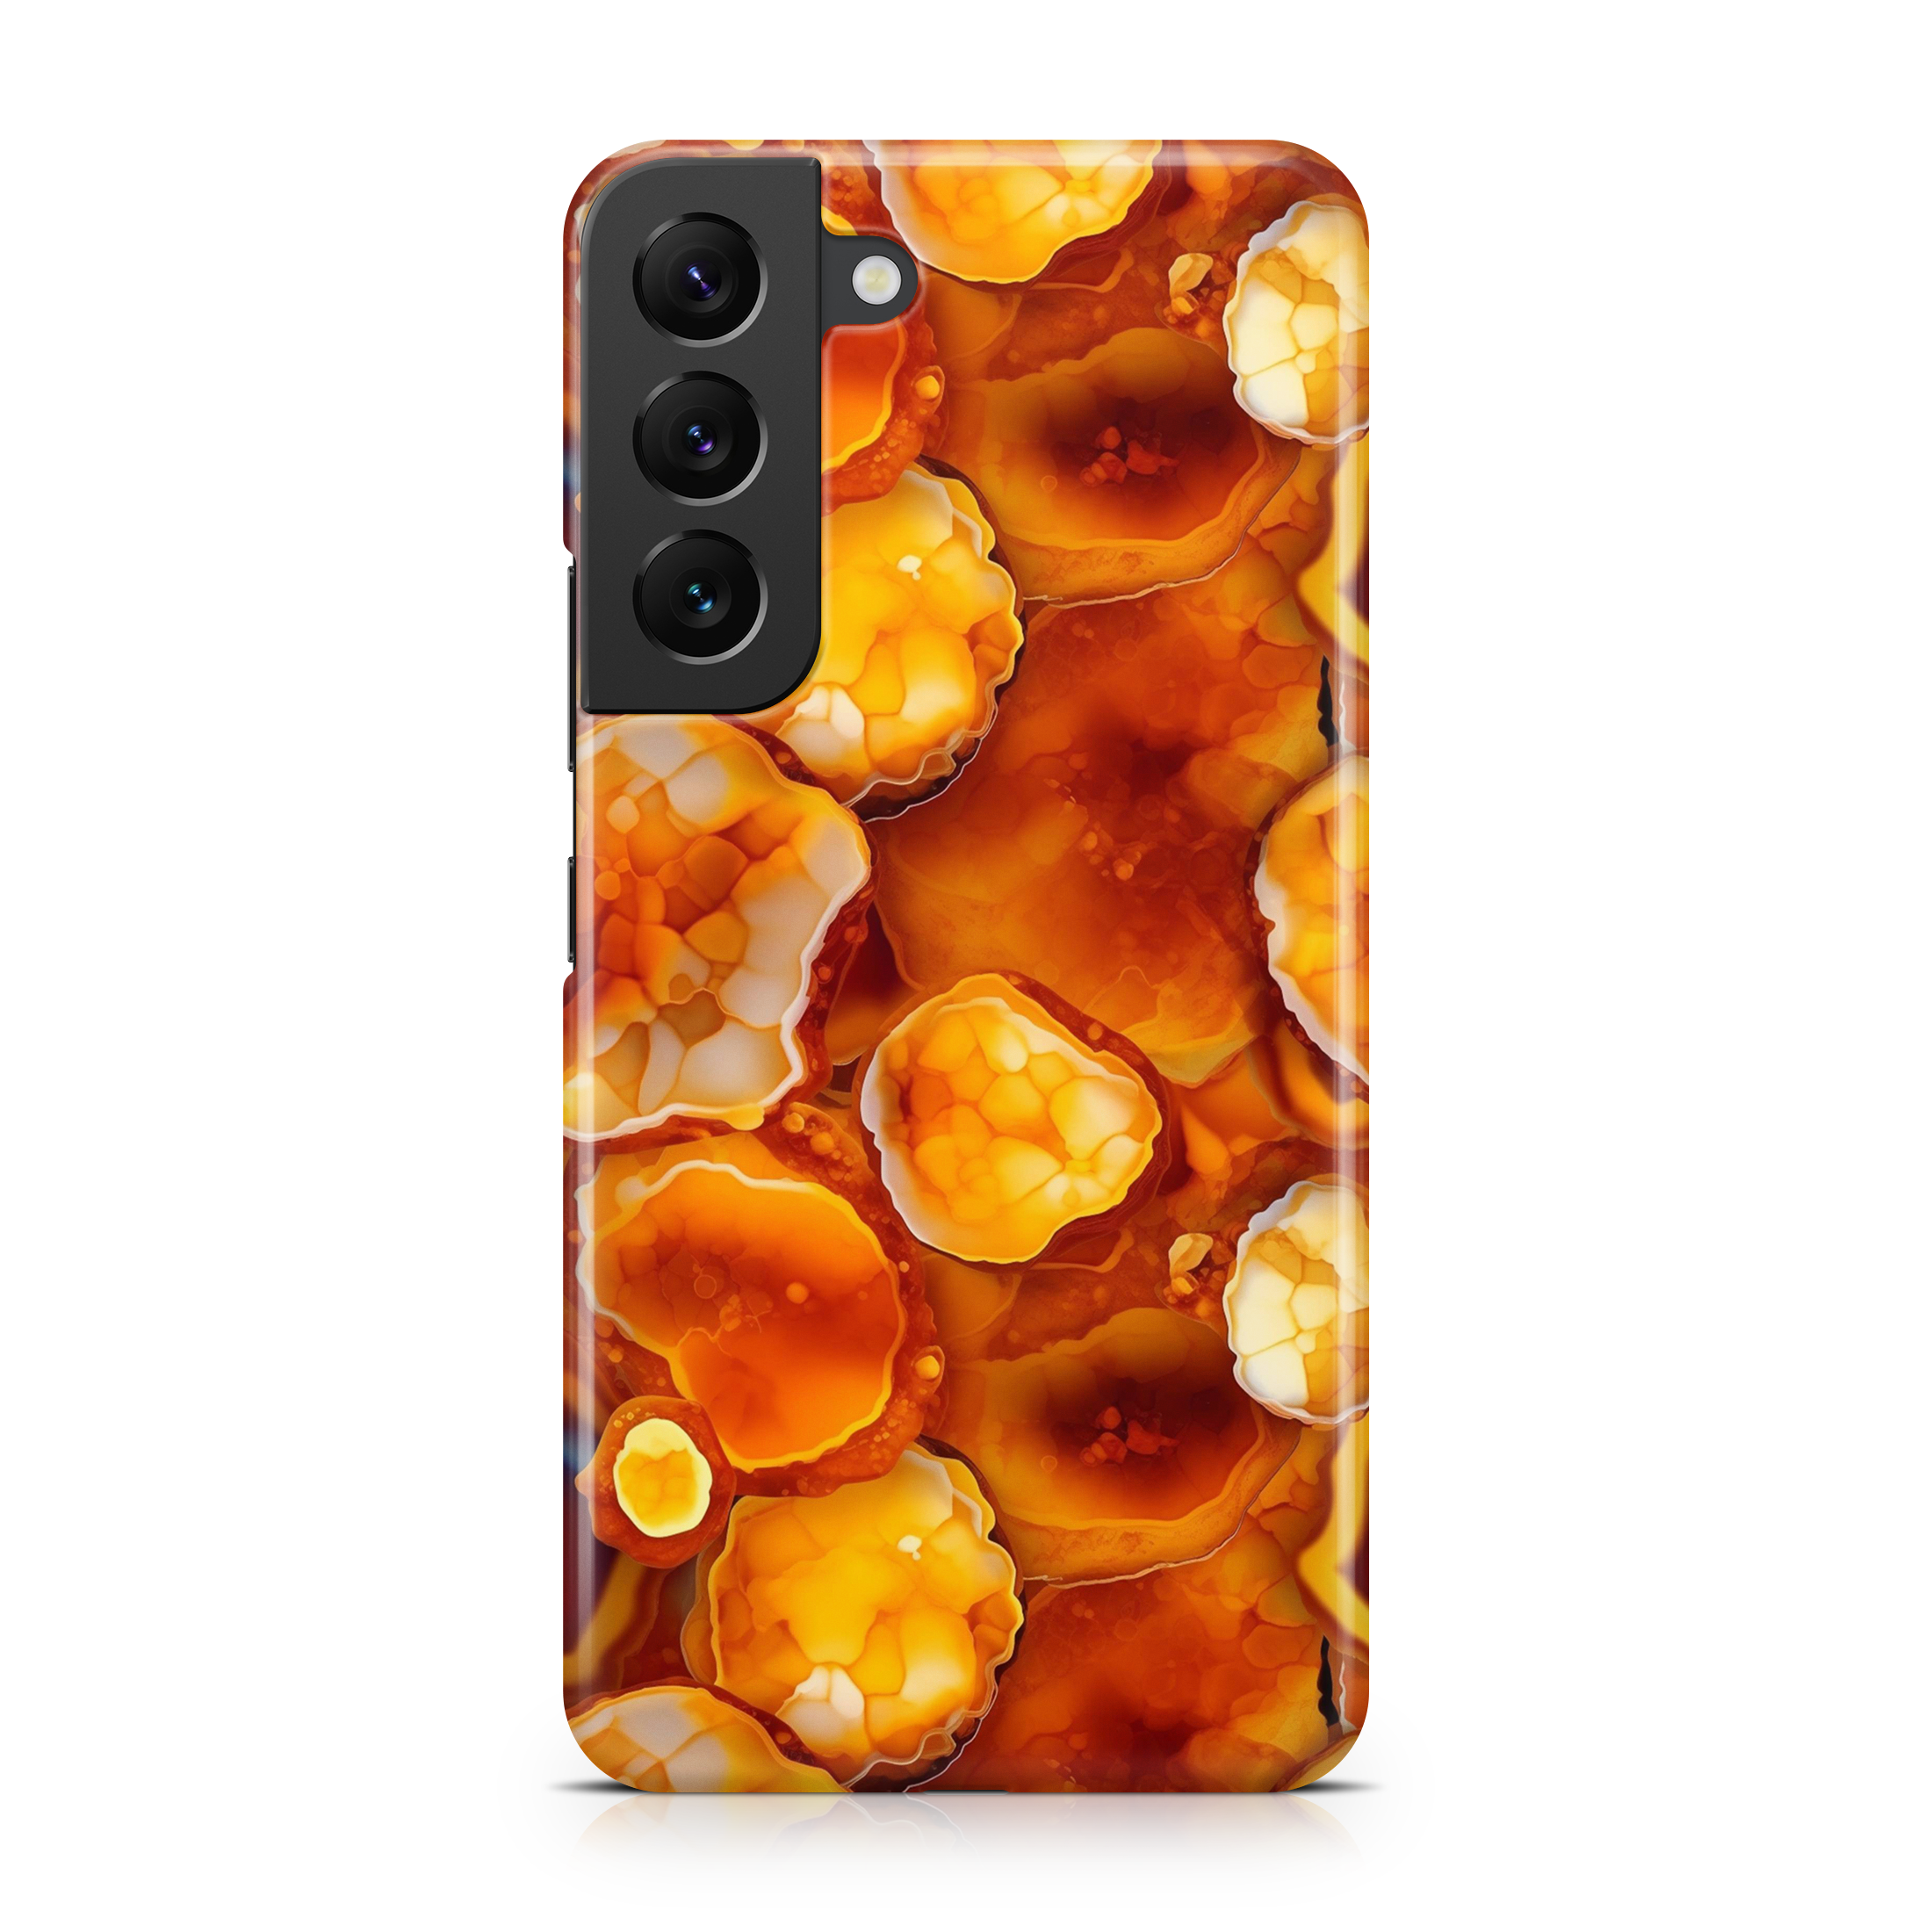 Orange Geode - Samsung phone case designs by CaseSwagger